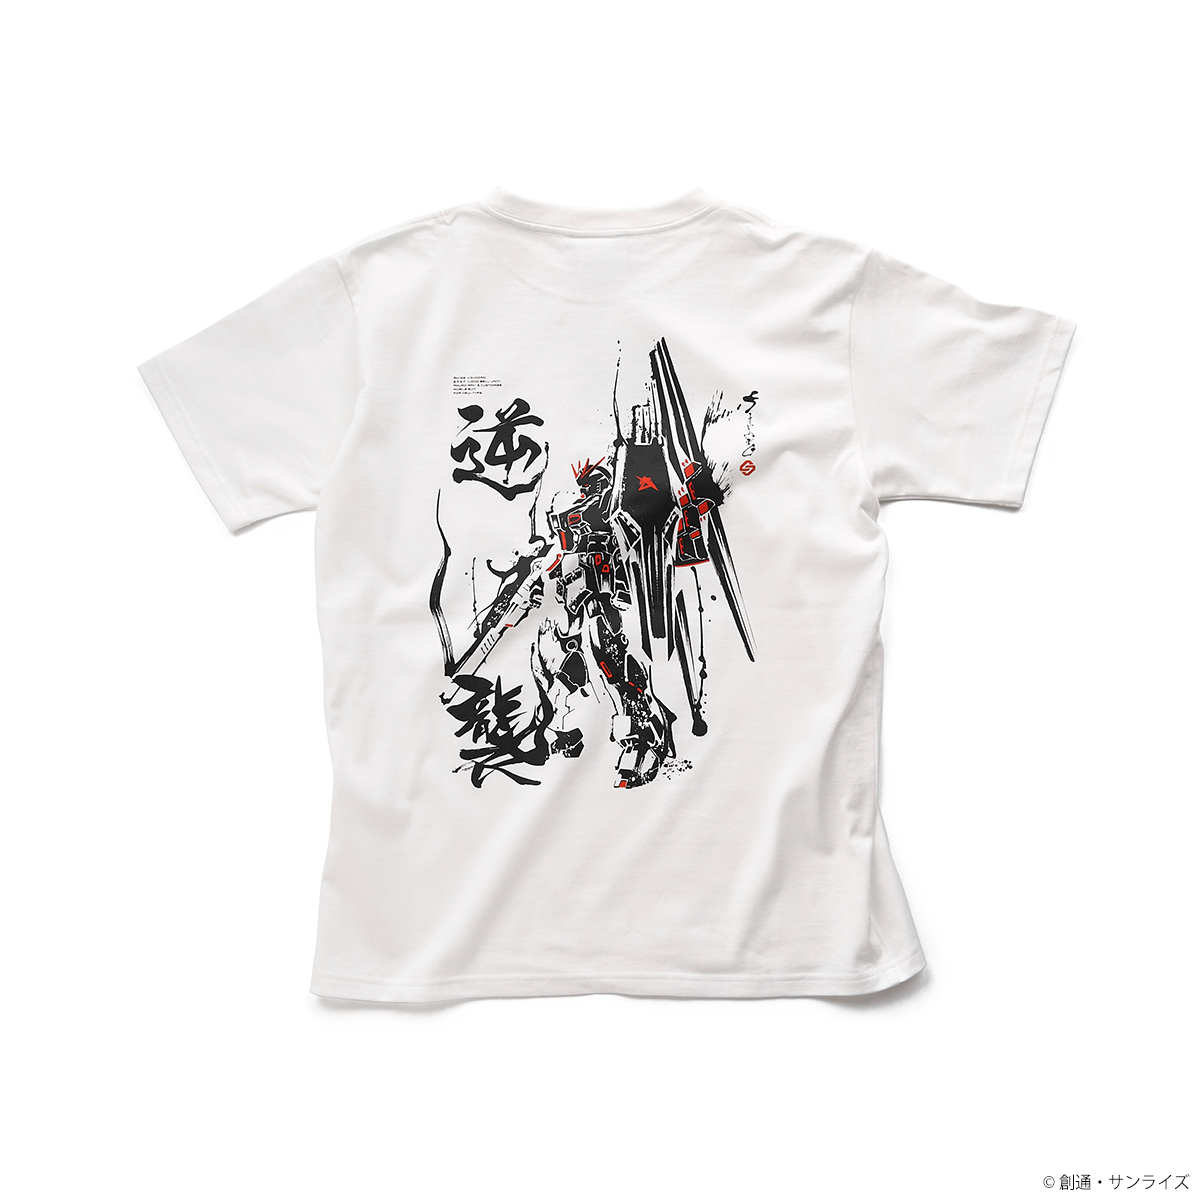 STRICT-G JAPAN『機動戦士ガンダム 逆襲のシャア』Tシャツ νガンダム柄